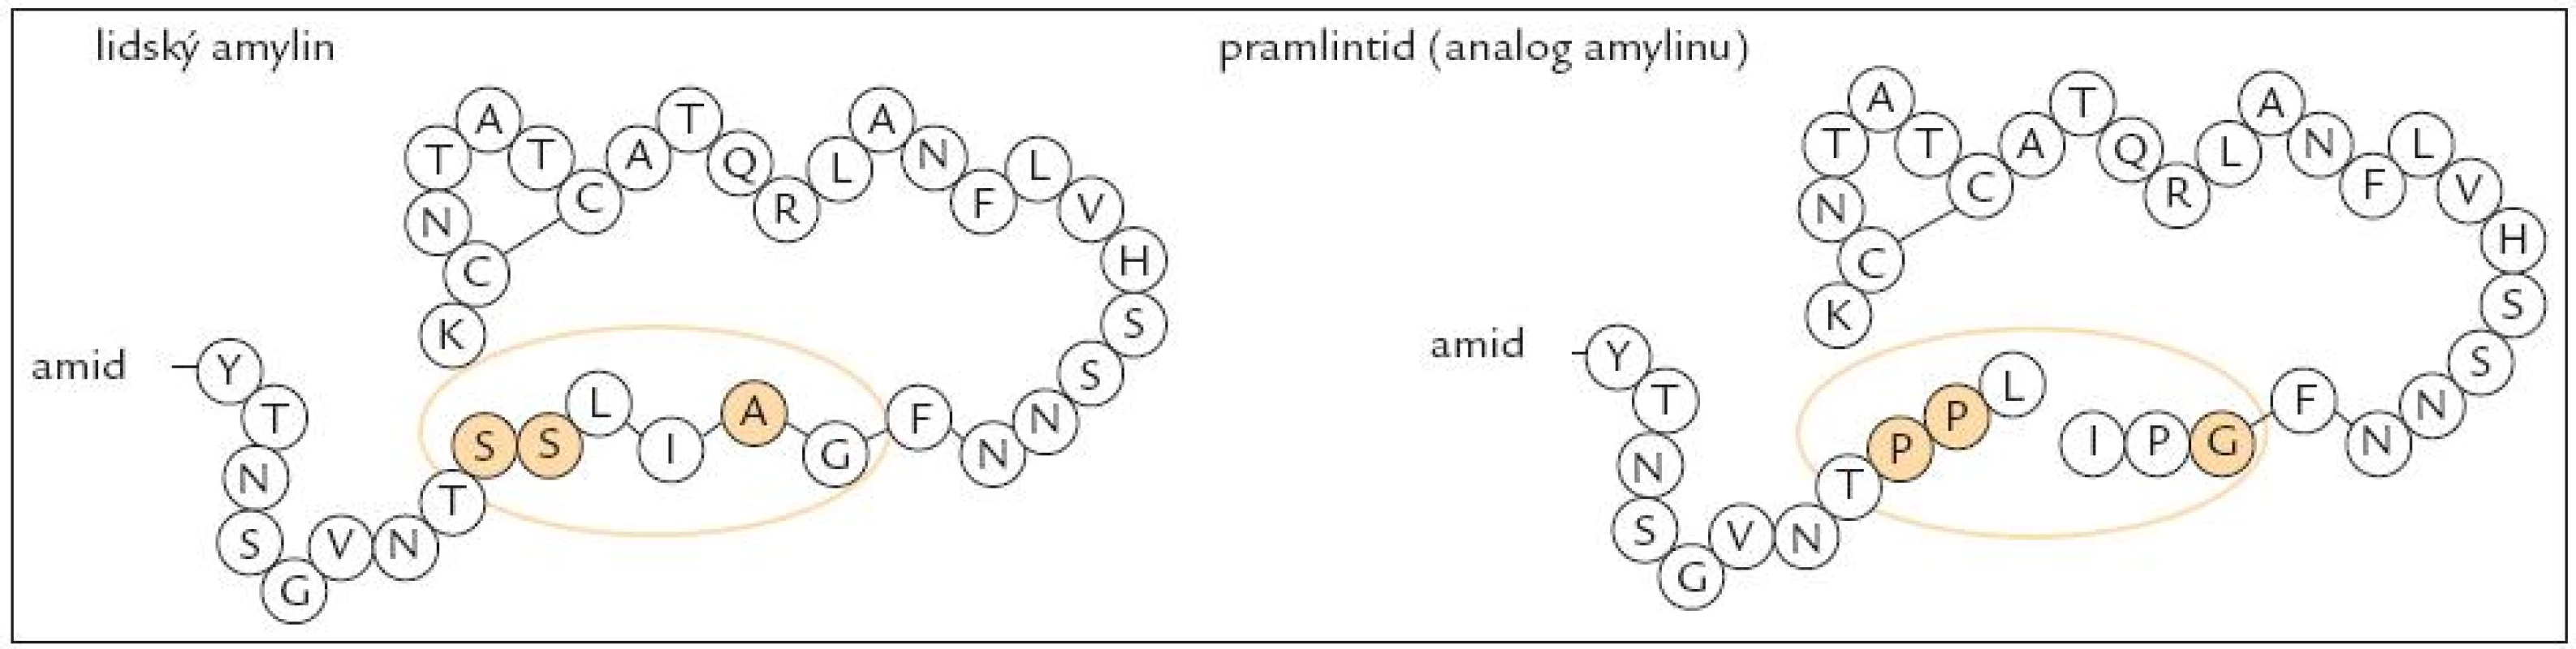 Struktura amylinu a analoga amylinu (pramlintidu) [52].